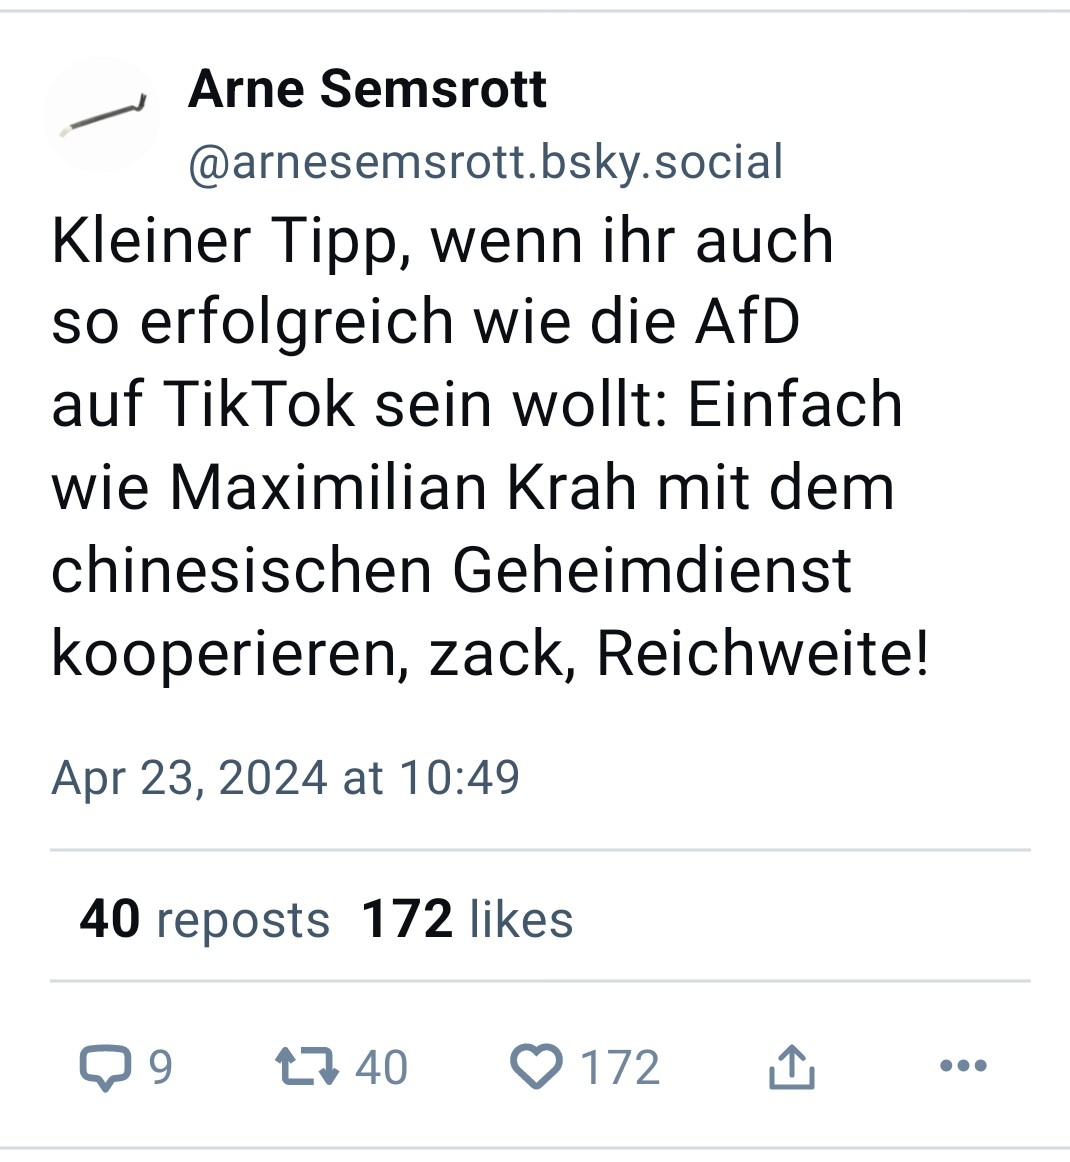 Arne Semsrott: Kleiner Tipp, wenn ihr auch so erfolgreich wie die AfD auf TikTok sein wollt: Einfach wie Maximilian Krah mit dem chinesischen Geheimdienst kooperieren, zack, Reichweite!